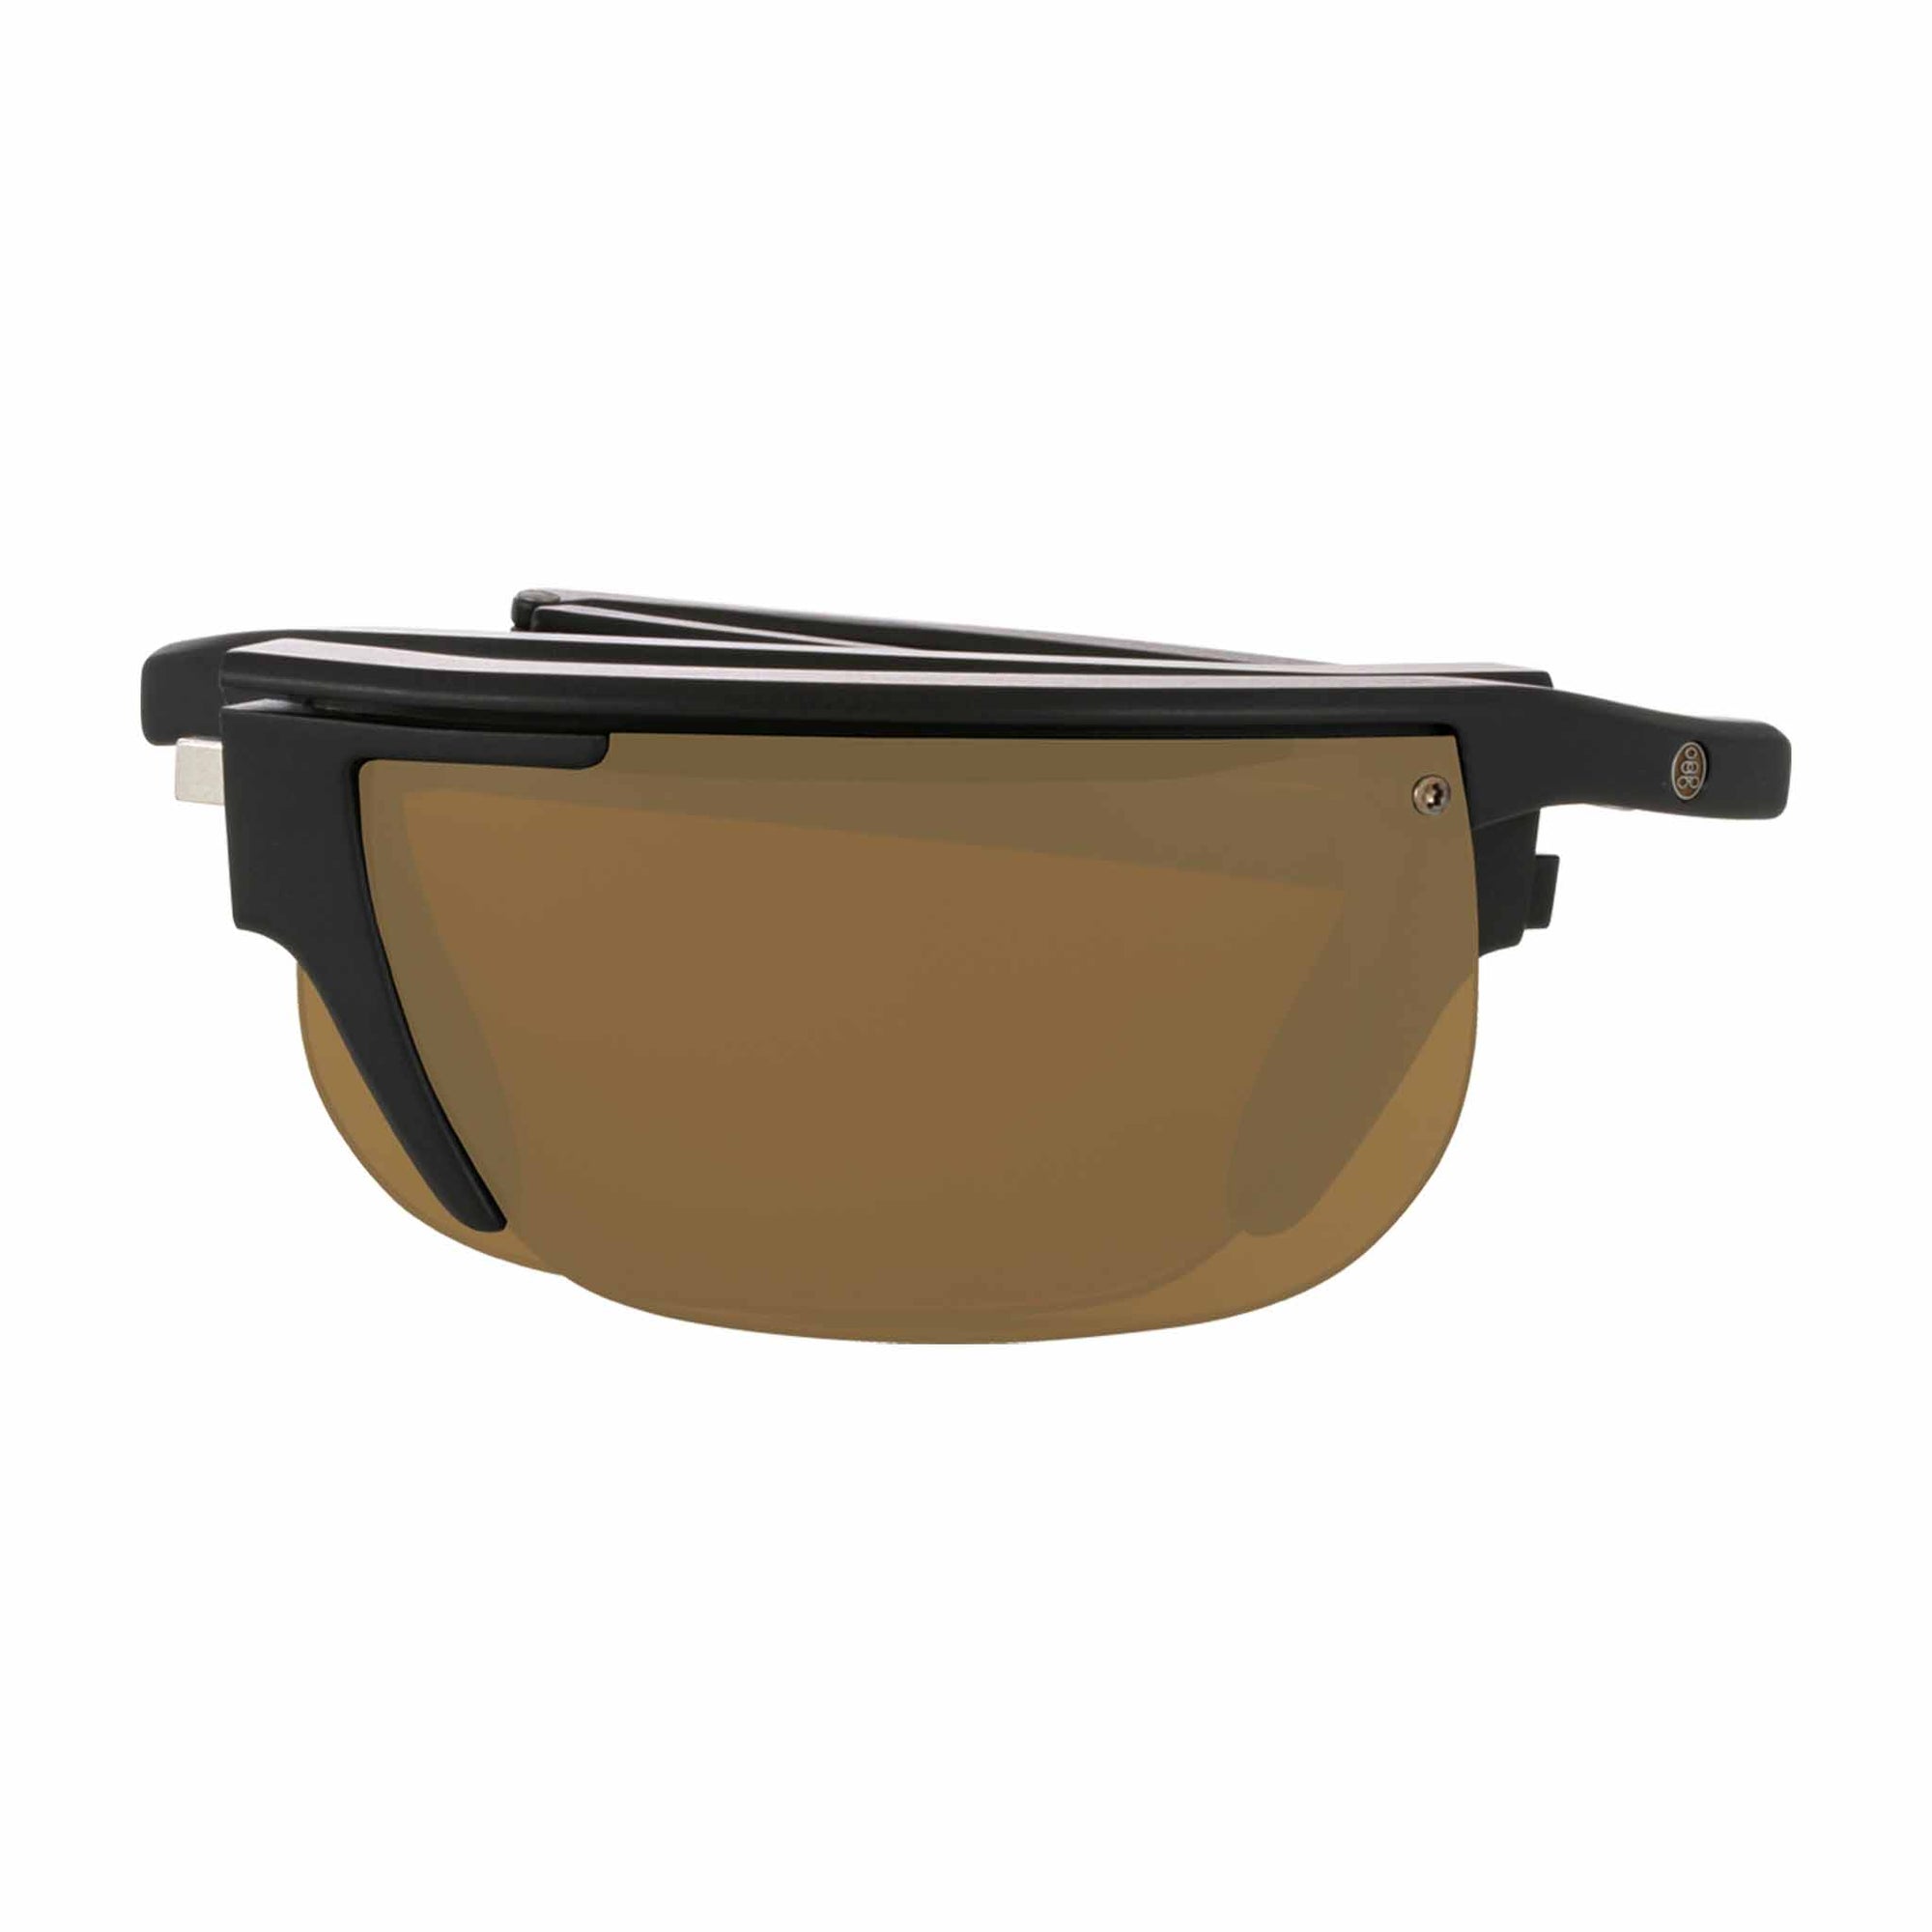 Popticals, Premium Compact Sunglasses, PopArt, 010030-BMNP, Polarized Sunglasses, Matte Black Frame, Brown Lenses, Compact View